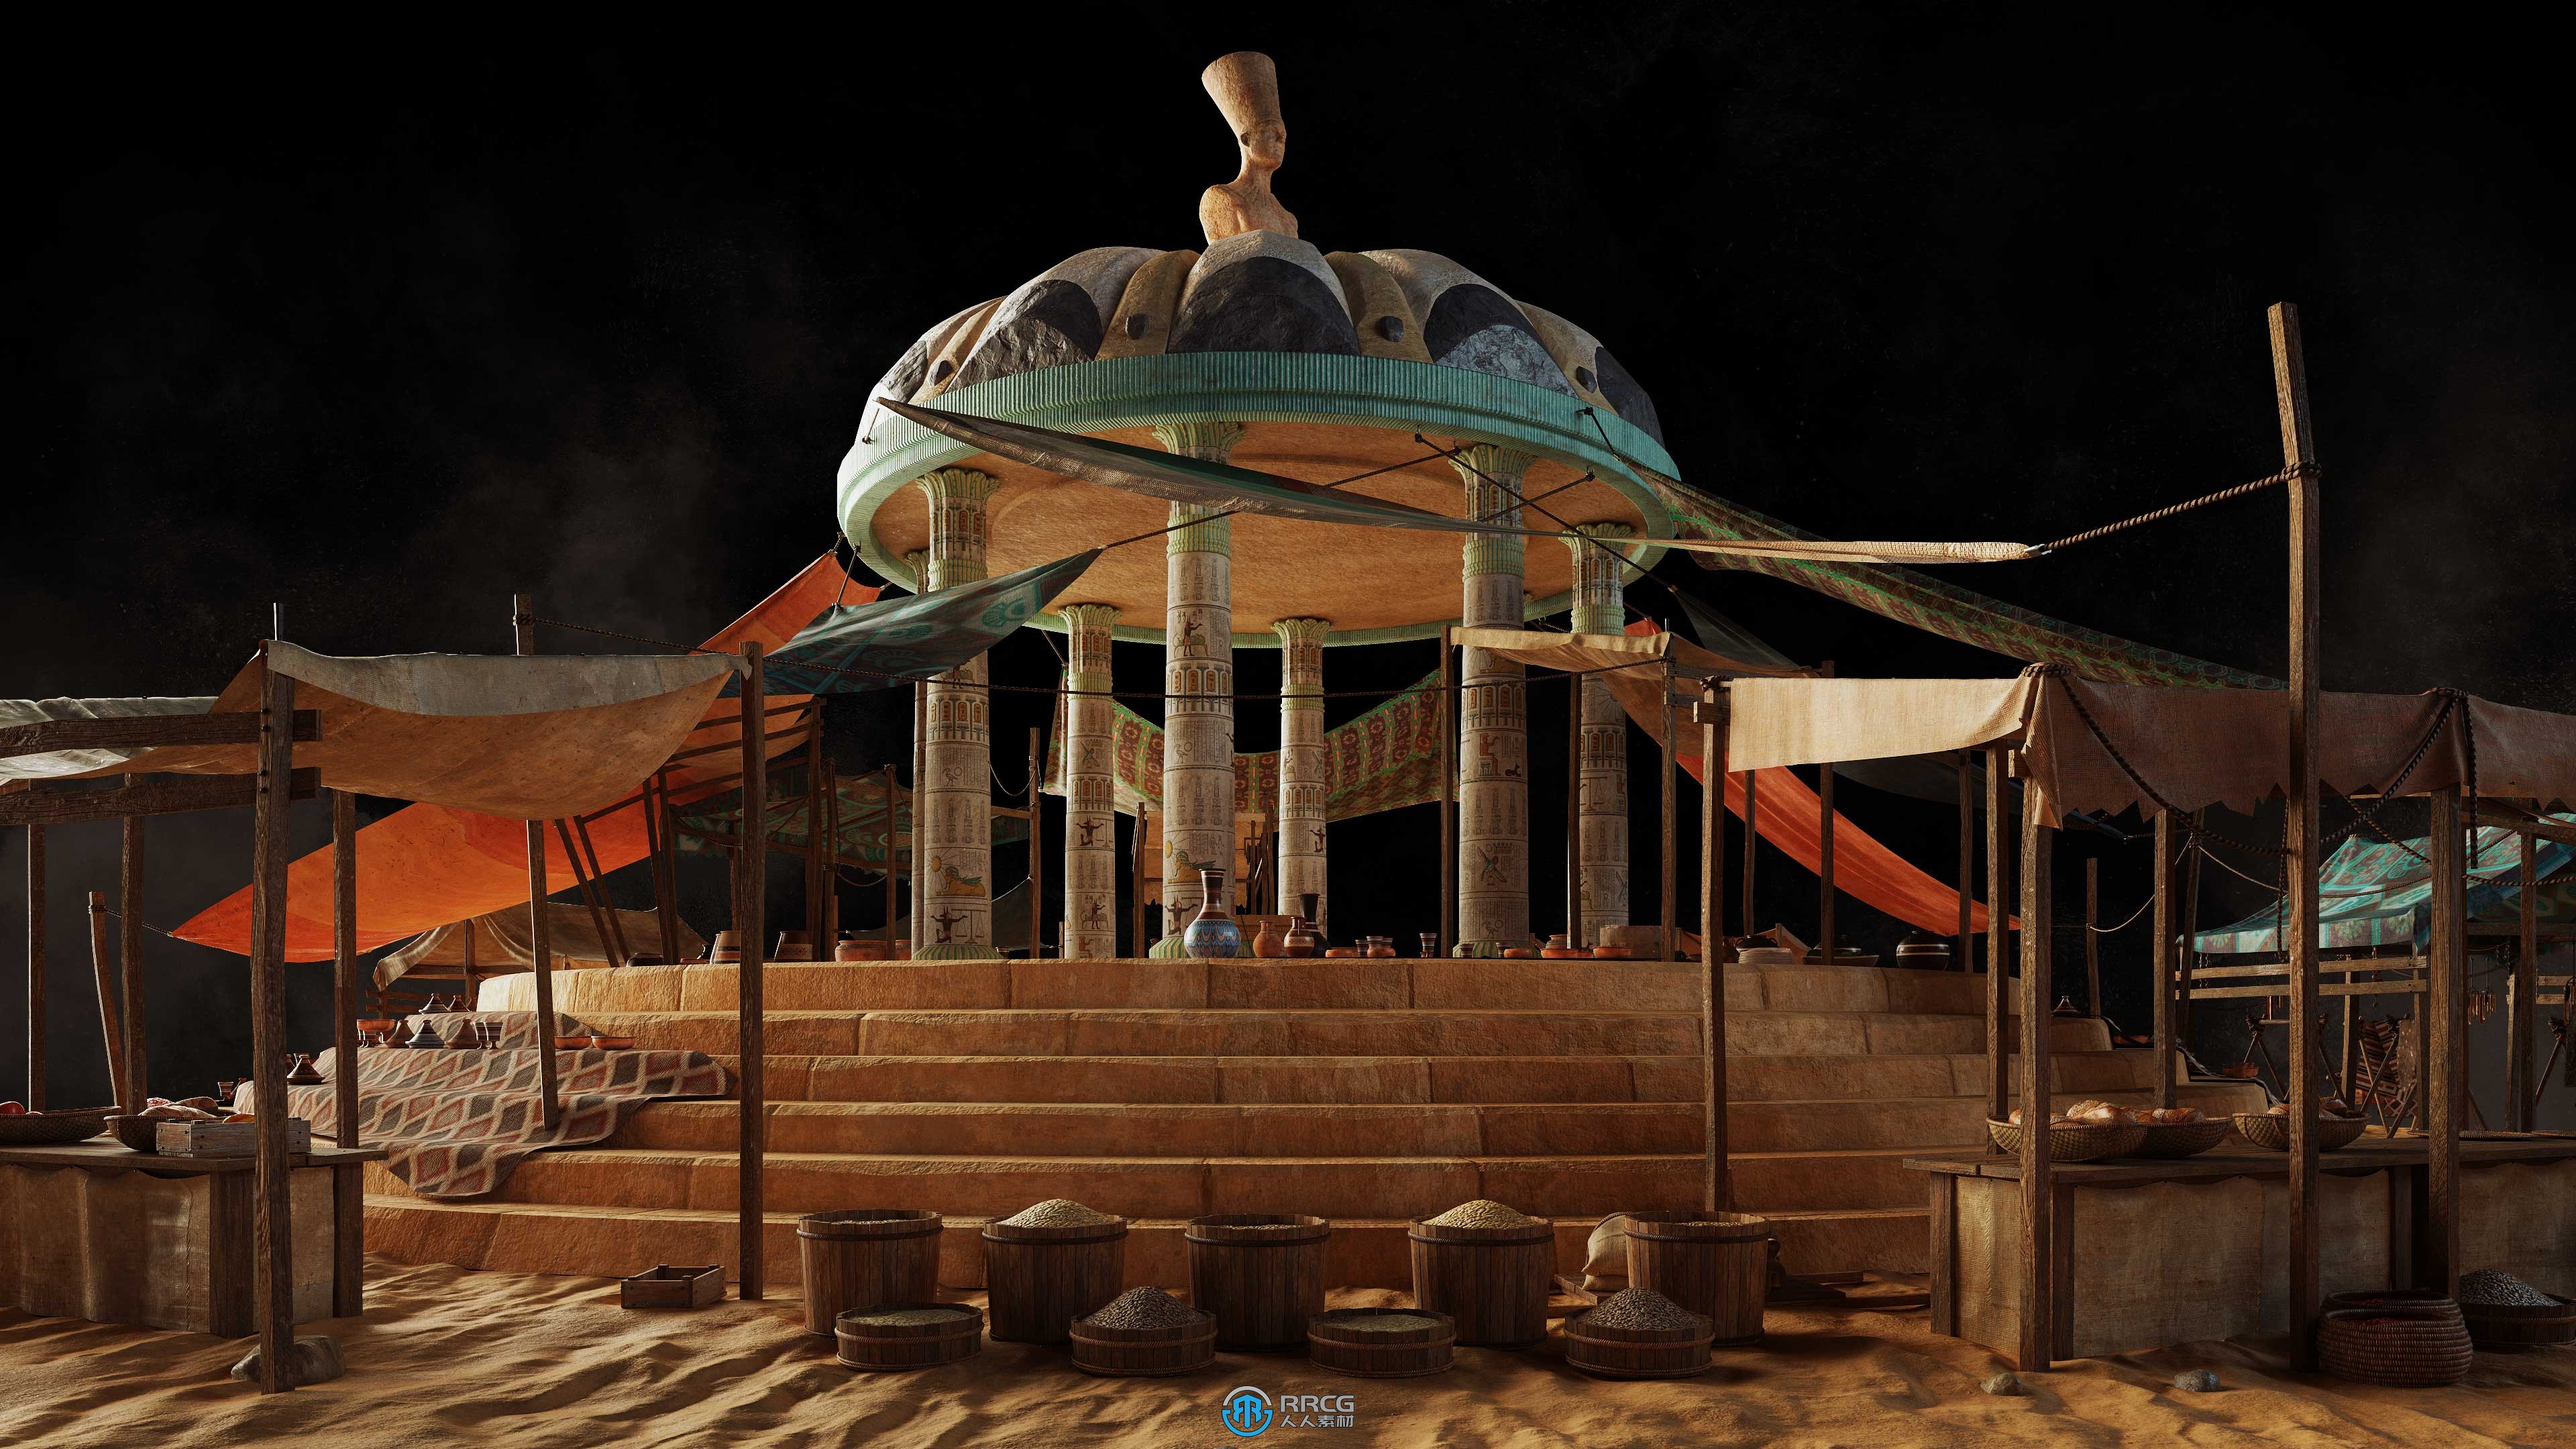 埃及古老帝国相关建筑景观场景3D模型合集